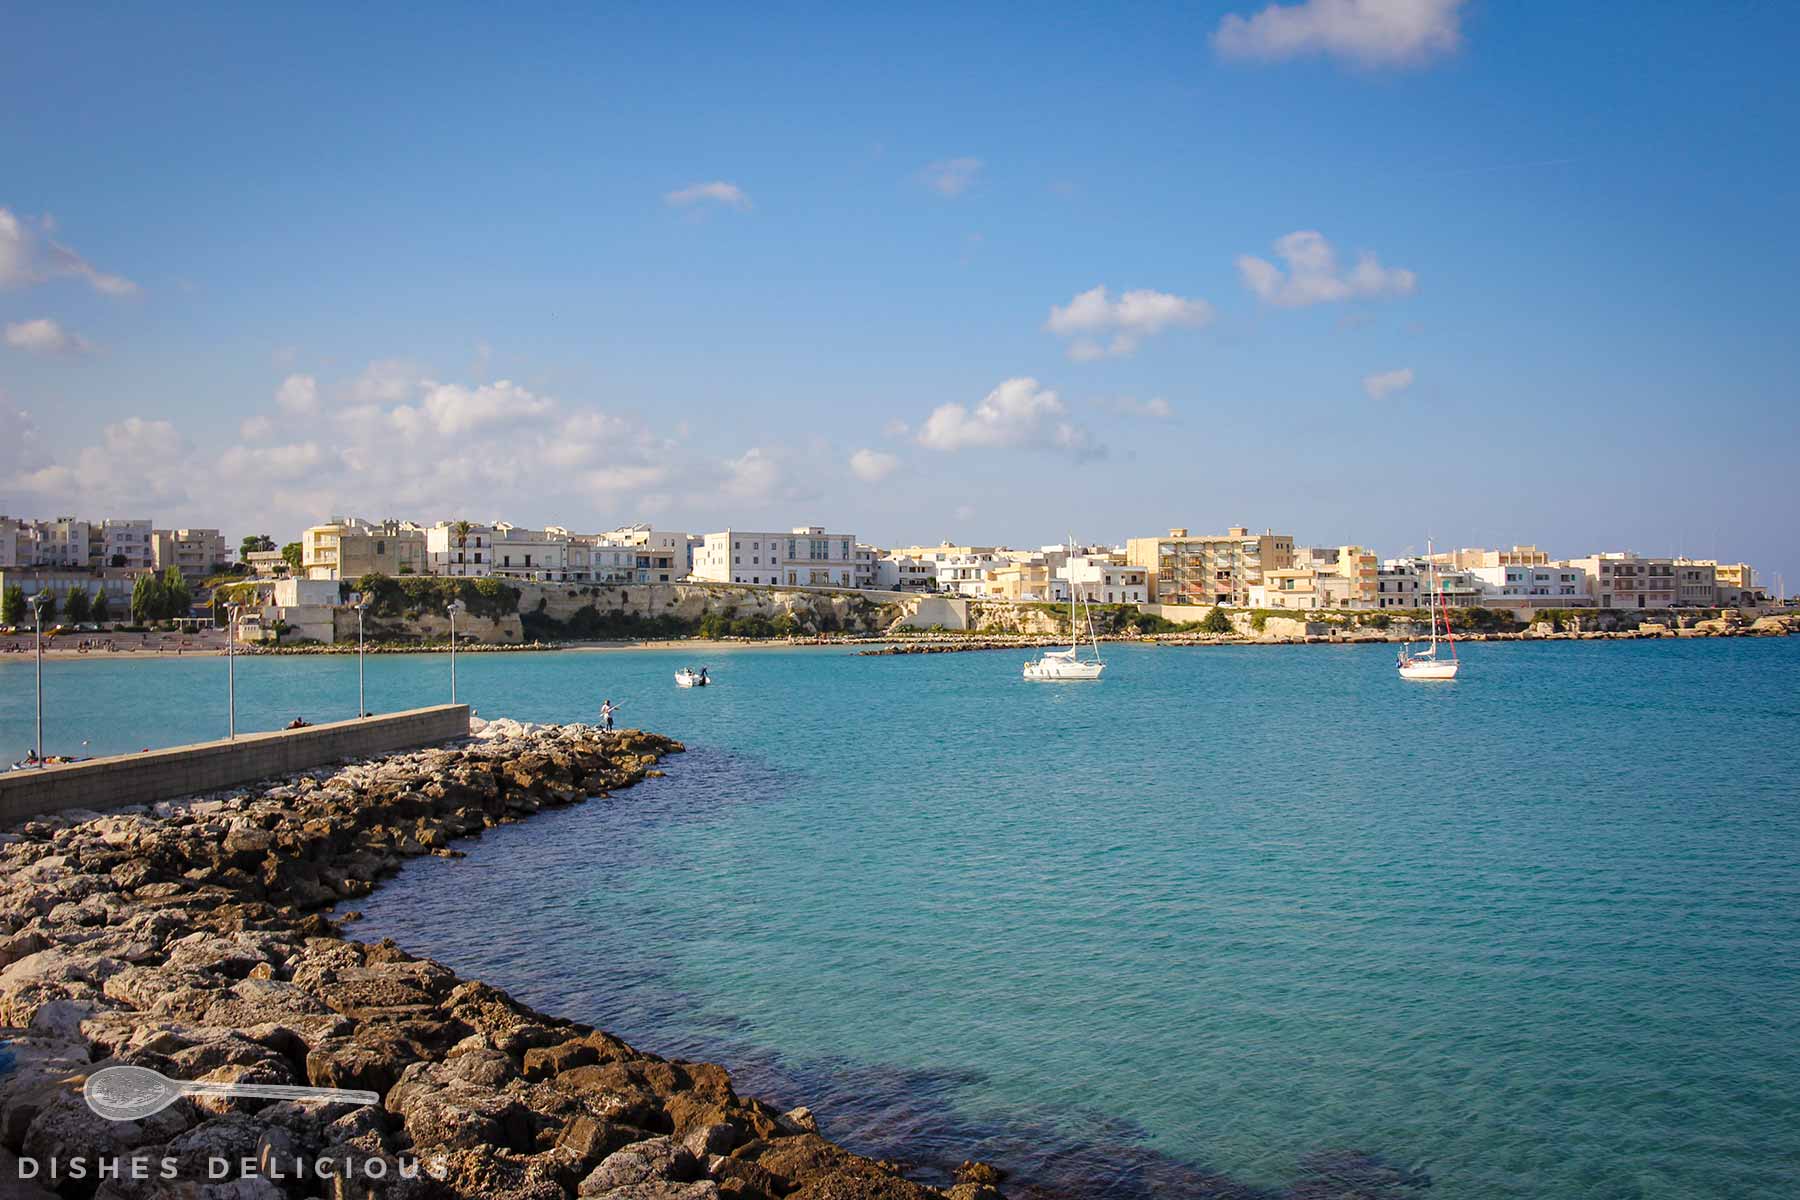 Bucht von Otranto, kleine Boote ankern auf dem Wasser, im Hintergrund einer der neuen Ortsteile.